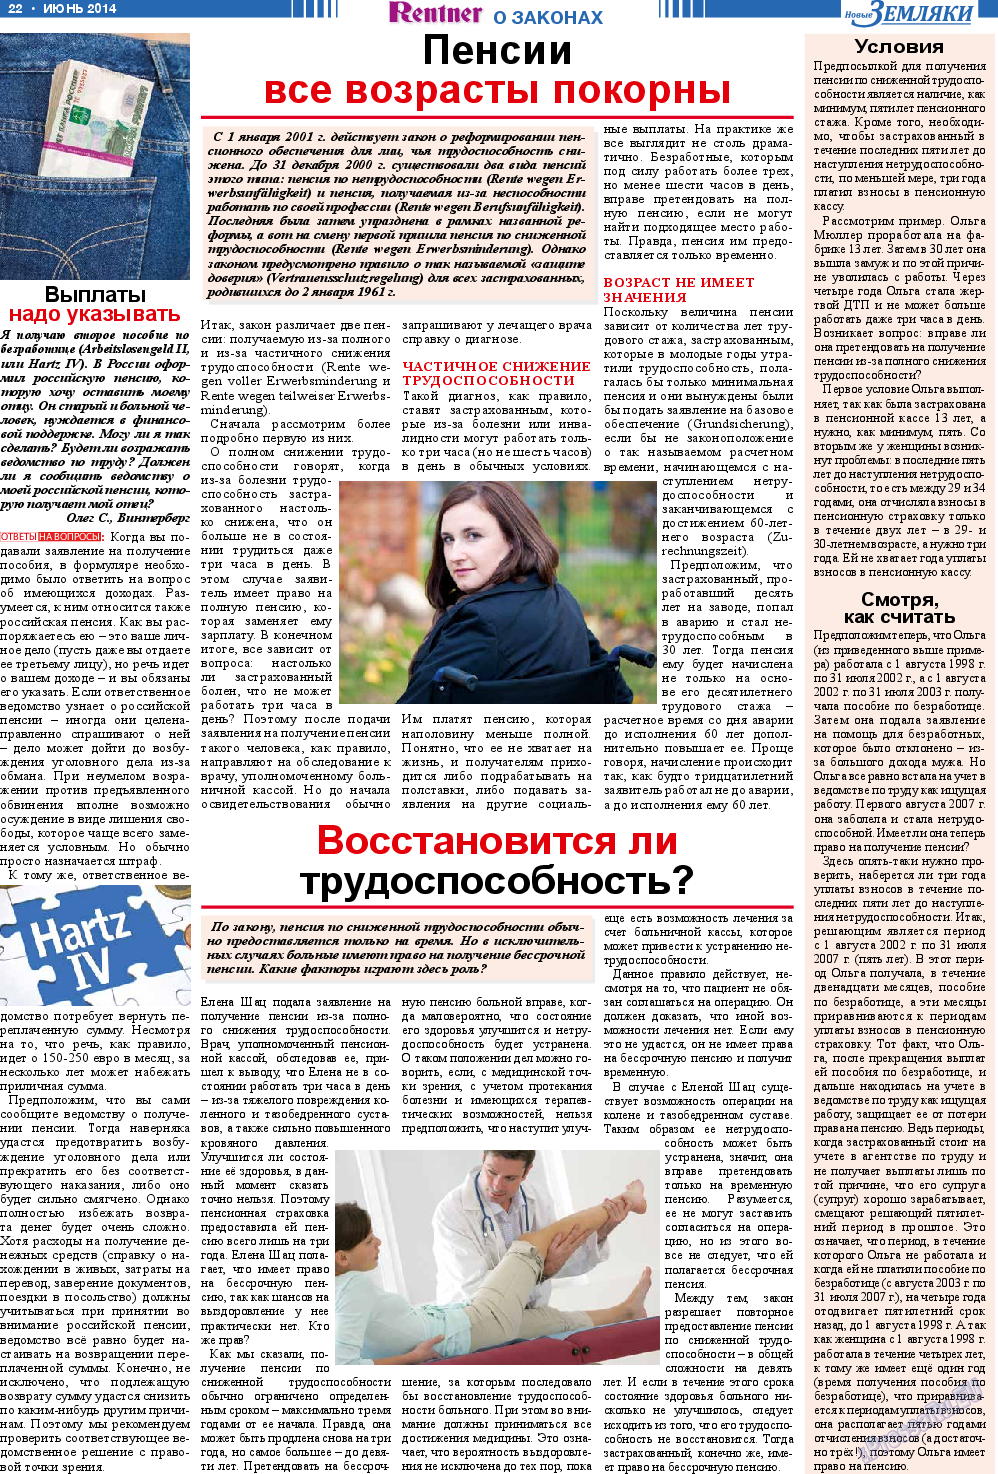 Новые Земляки, газета. 2014 №6 стр.22